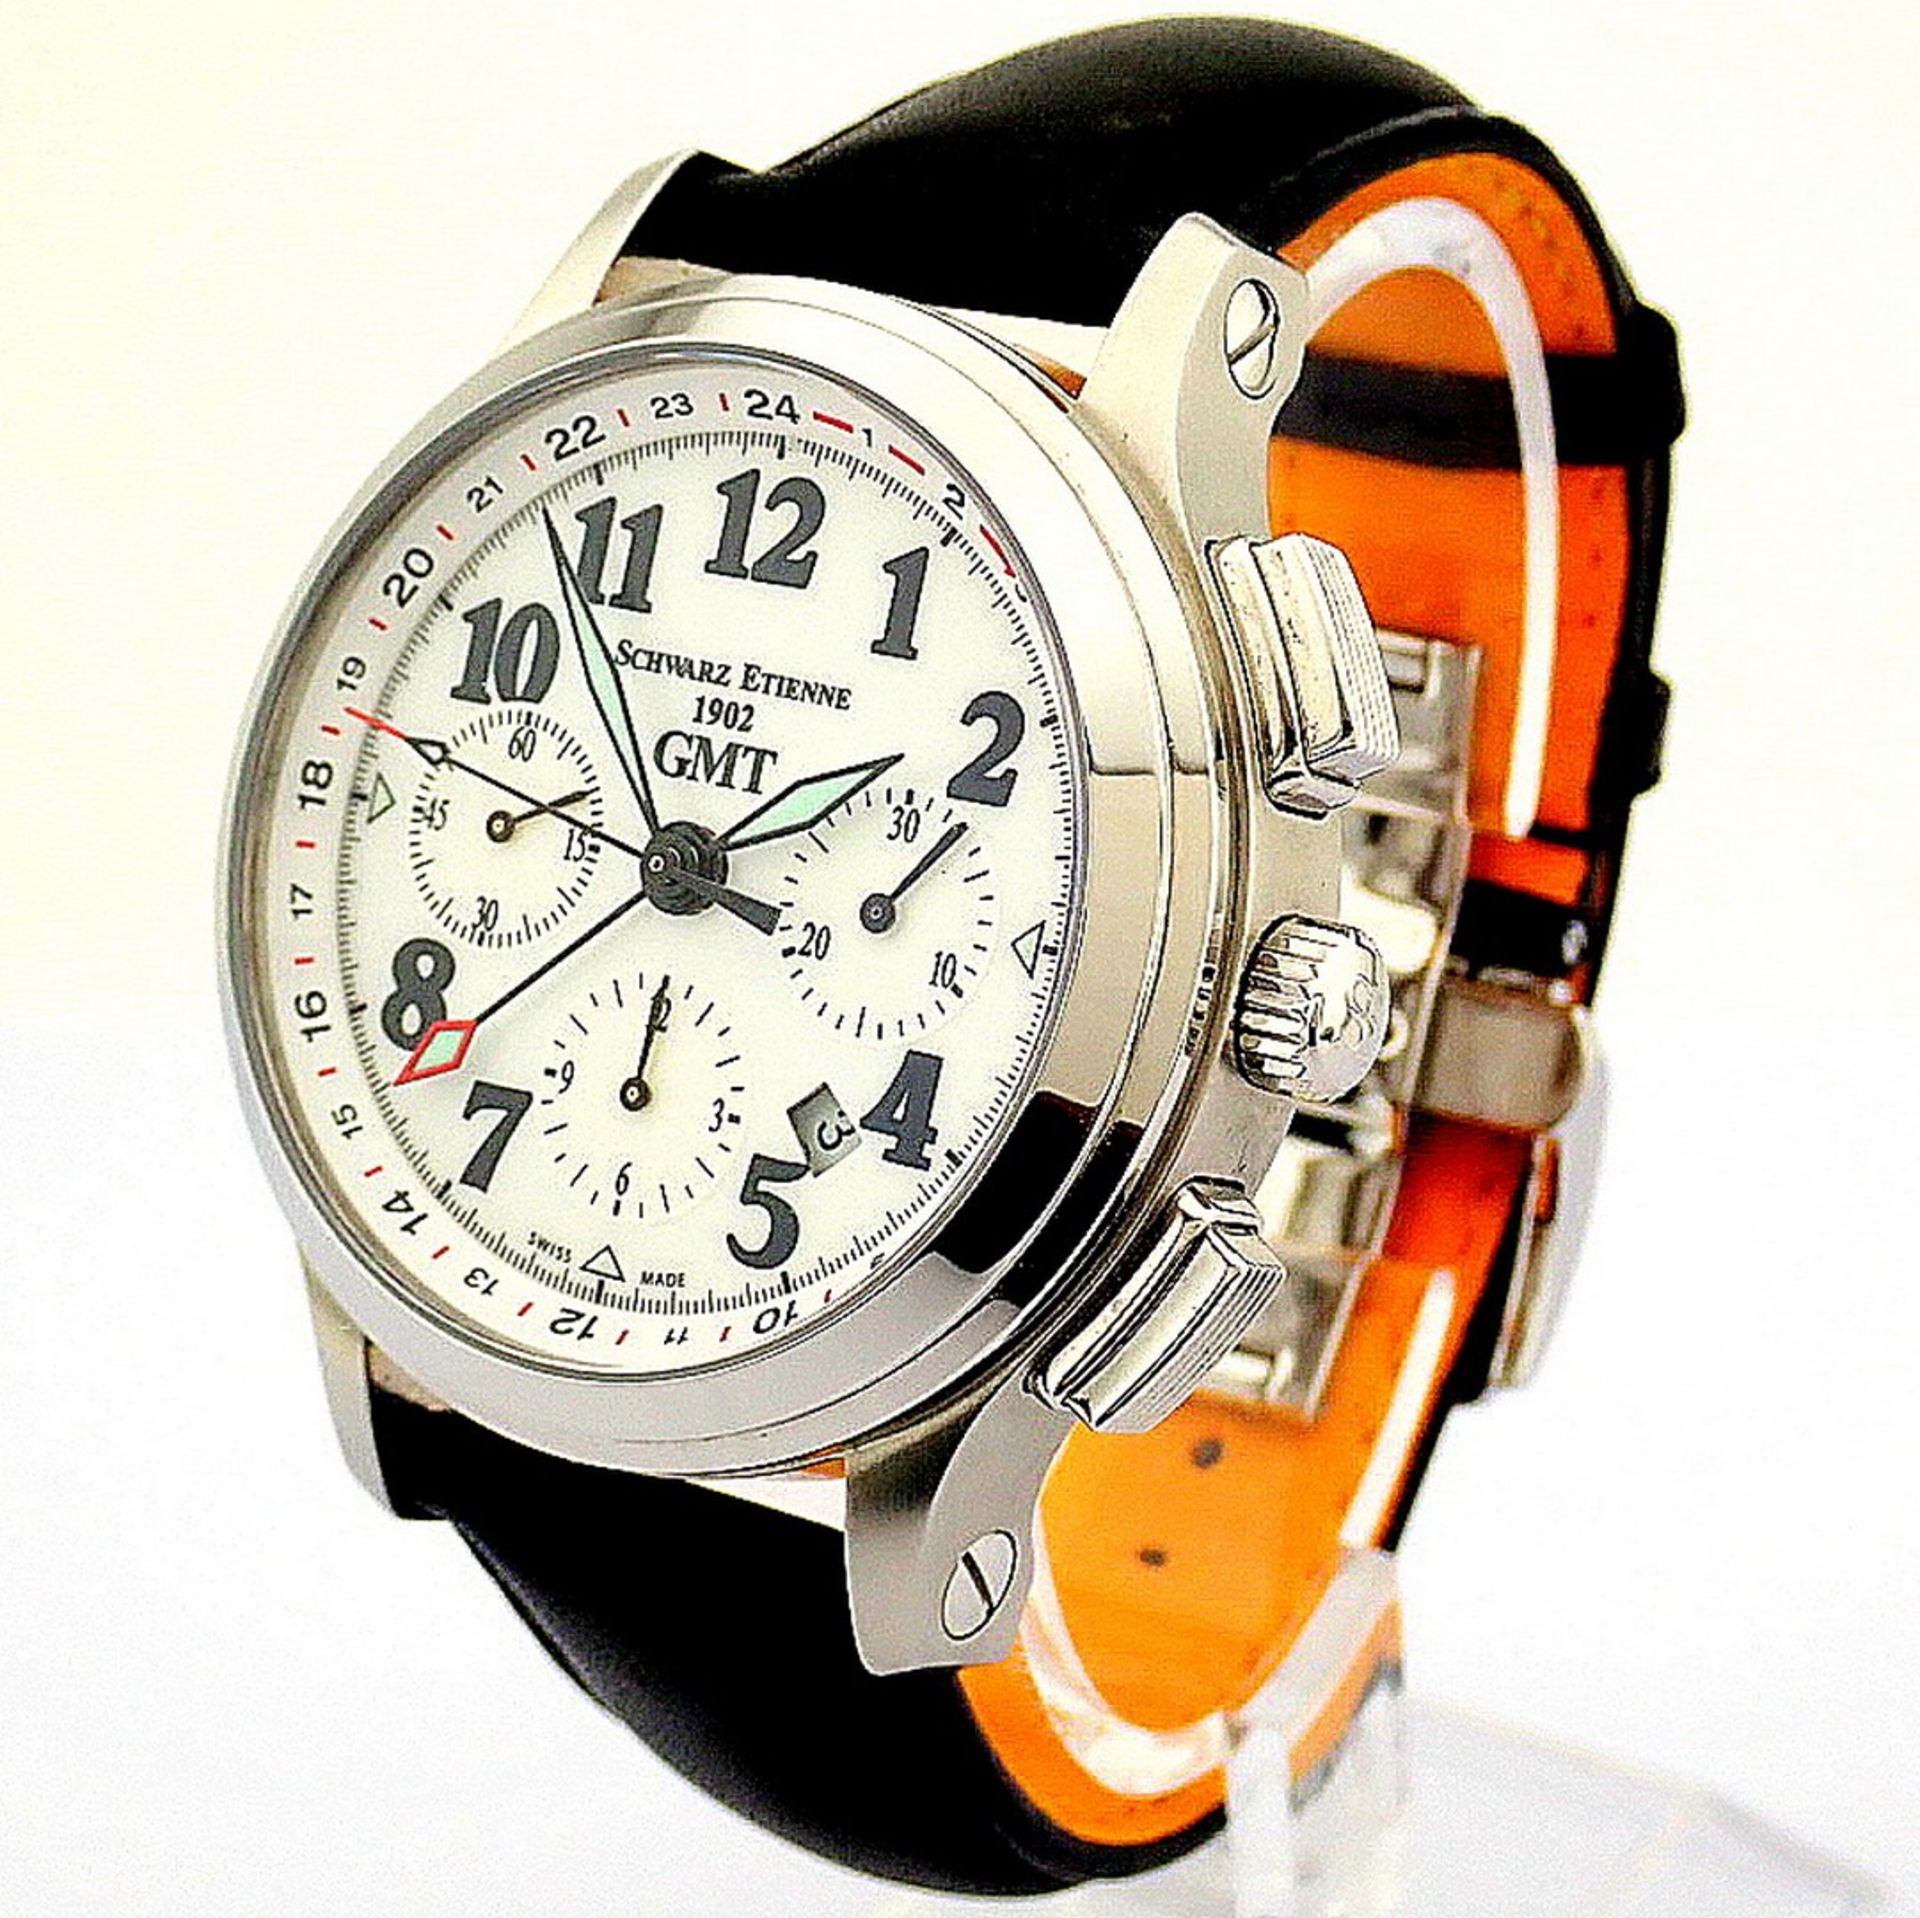 Schwarz Etienne / 1902 GMT Chronograph - Gentlmen's Steel Wrist Watch - Image 6 of 12